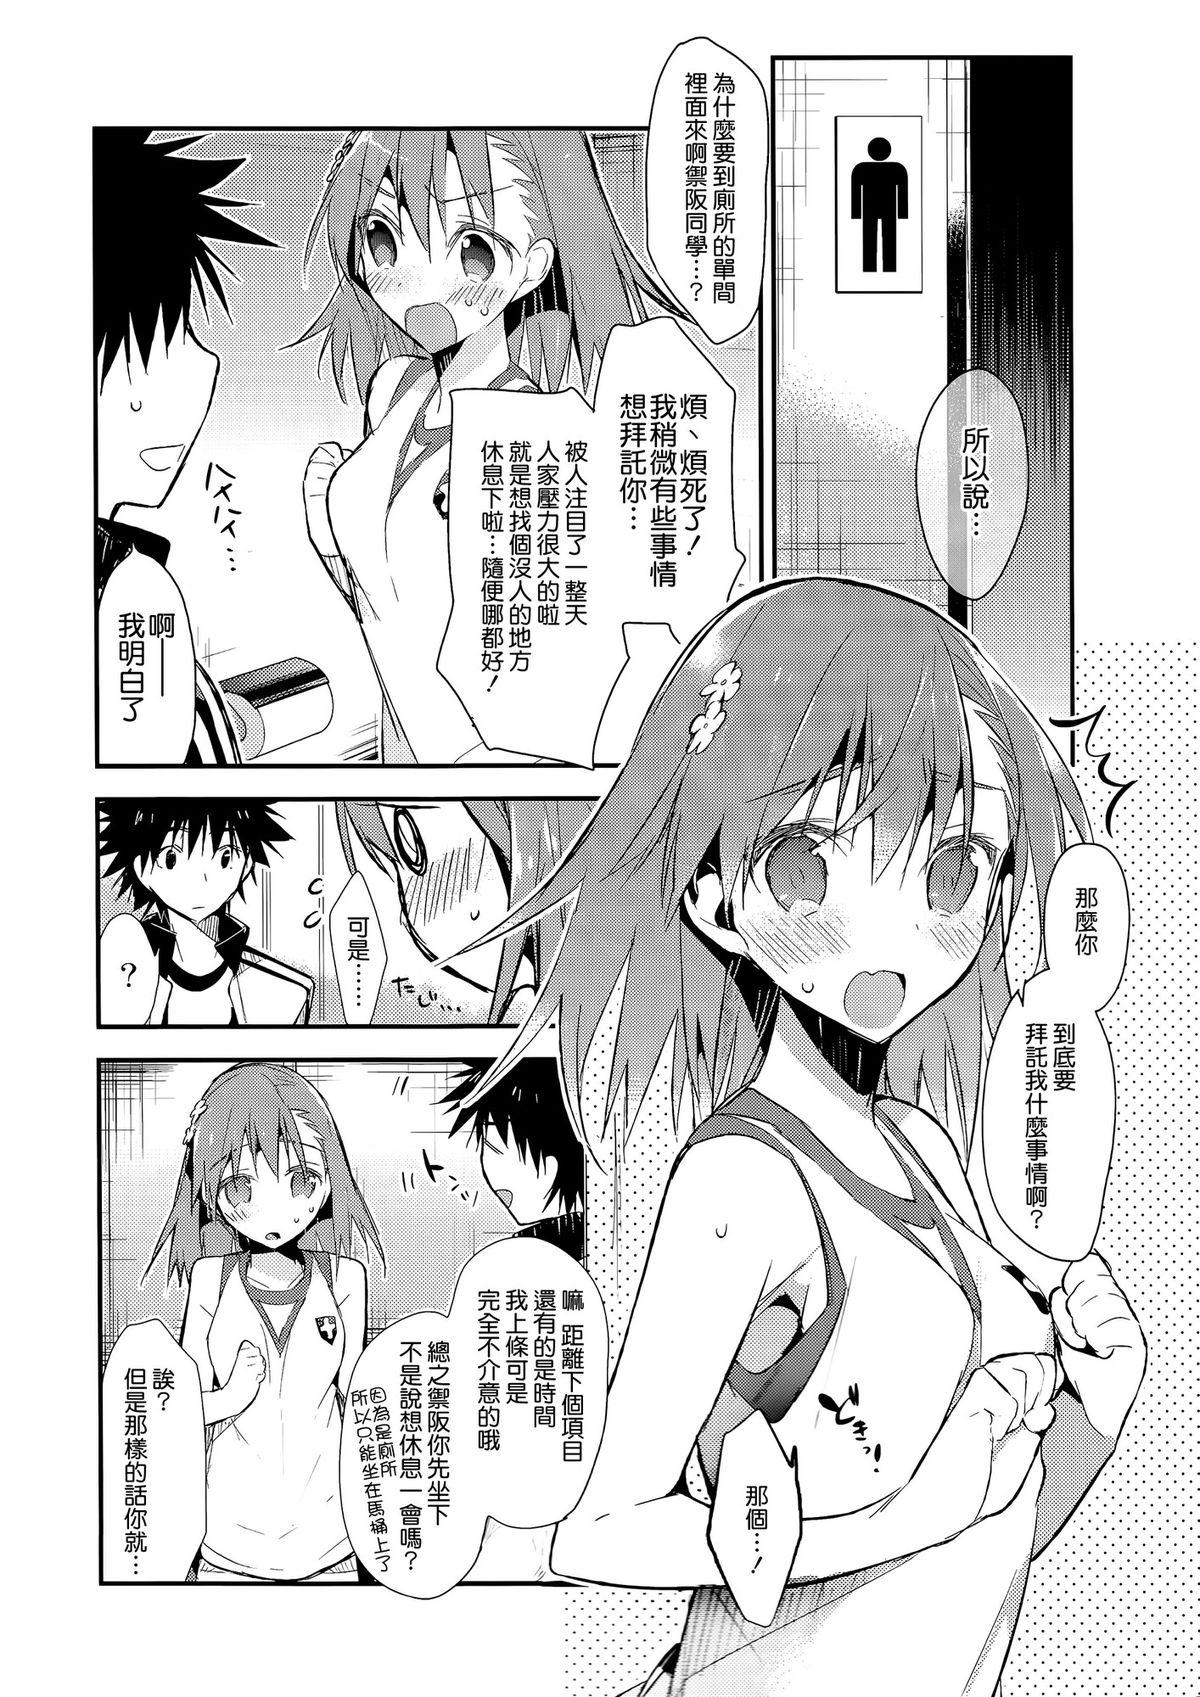 4some Mikoto to. 7 - Toaru majutsu no index Nurugel - Page 5